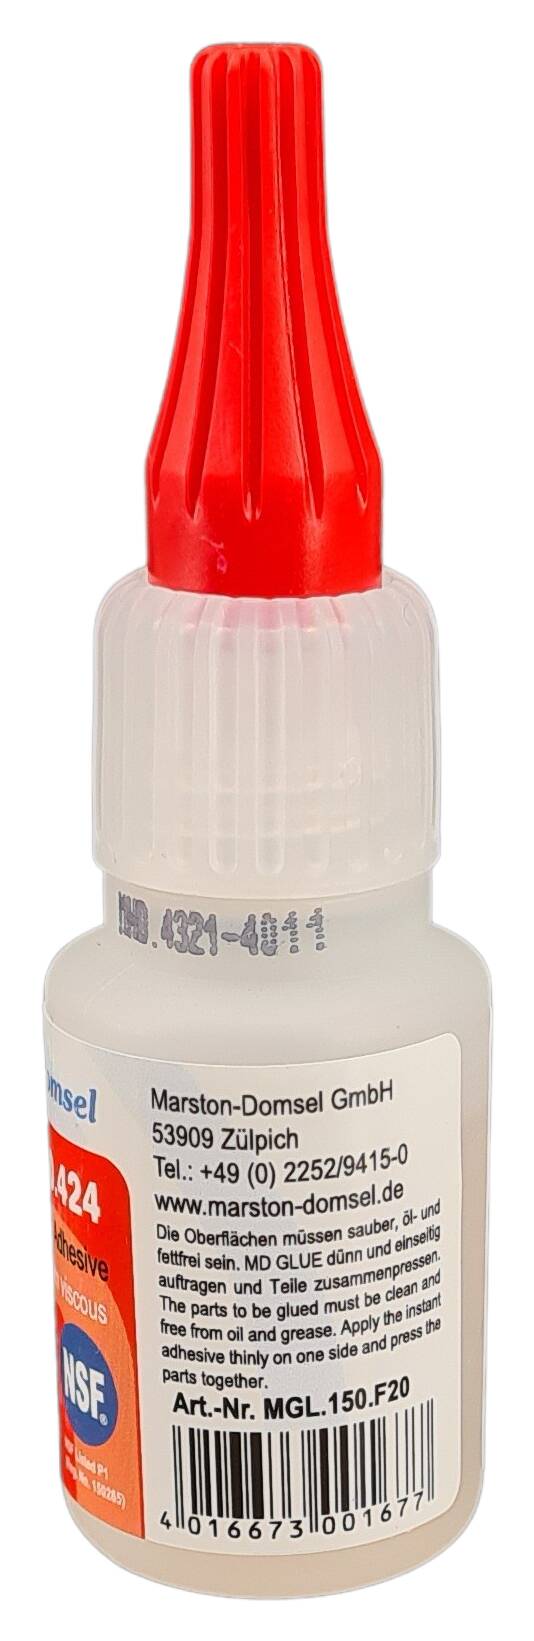 Hyloglue 150 á 20 gr. Universal adhesive medium viscosity